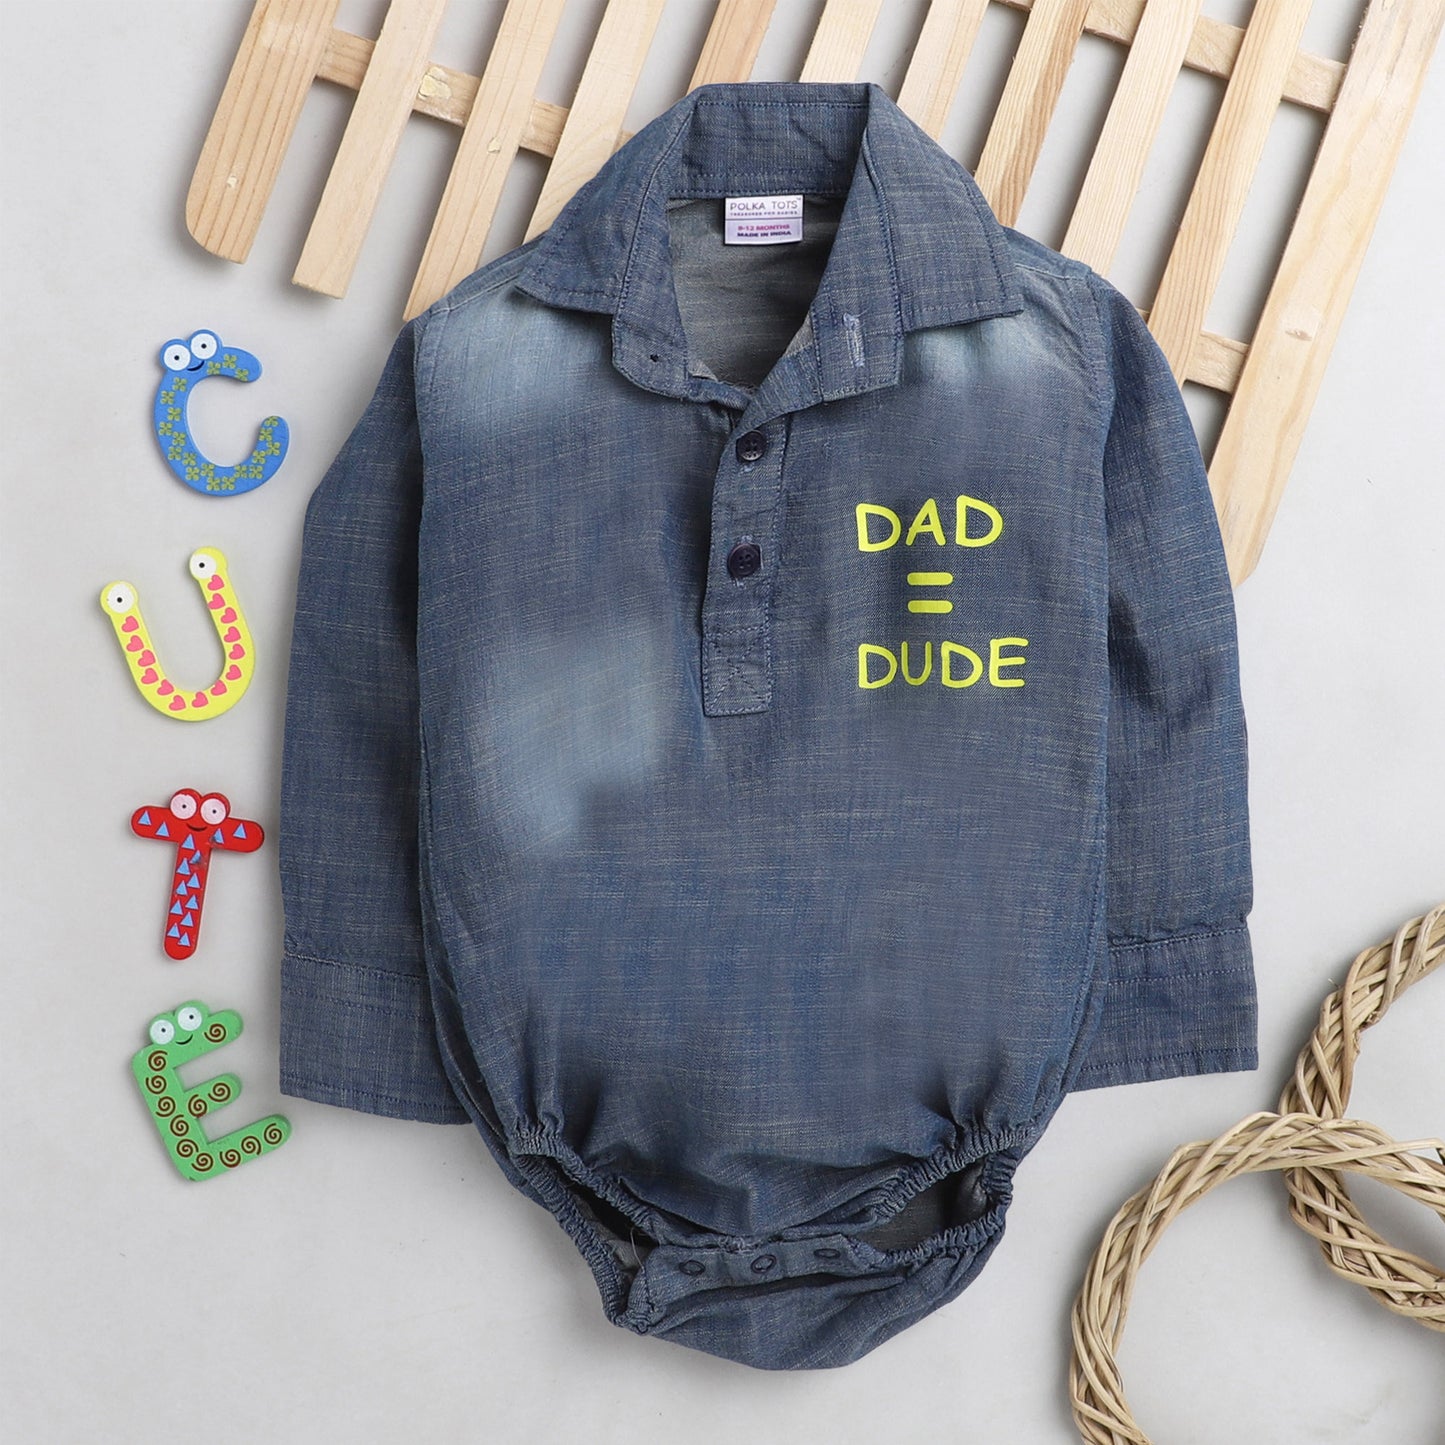 Polka Tots Full Sleeve Denim Onesie with dad = dude print  - Blue